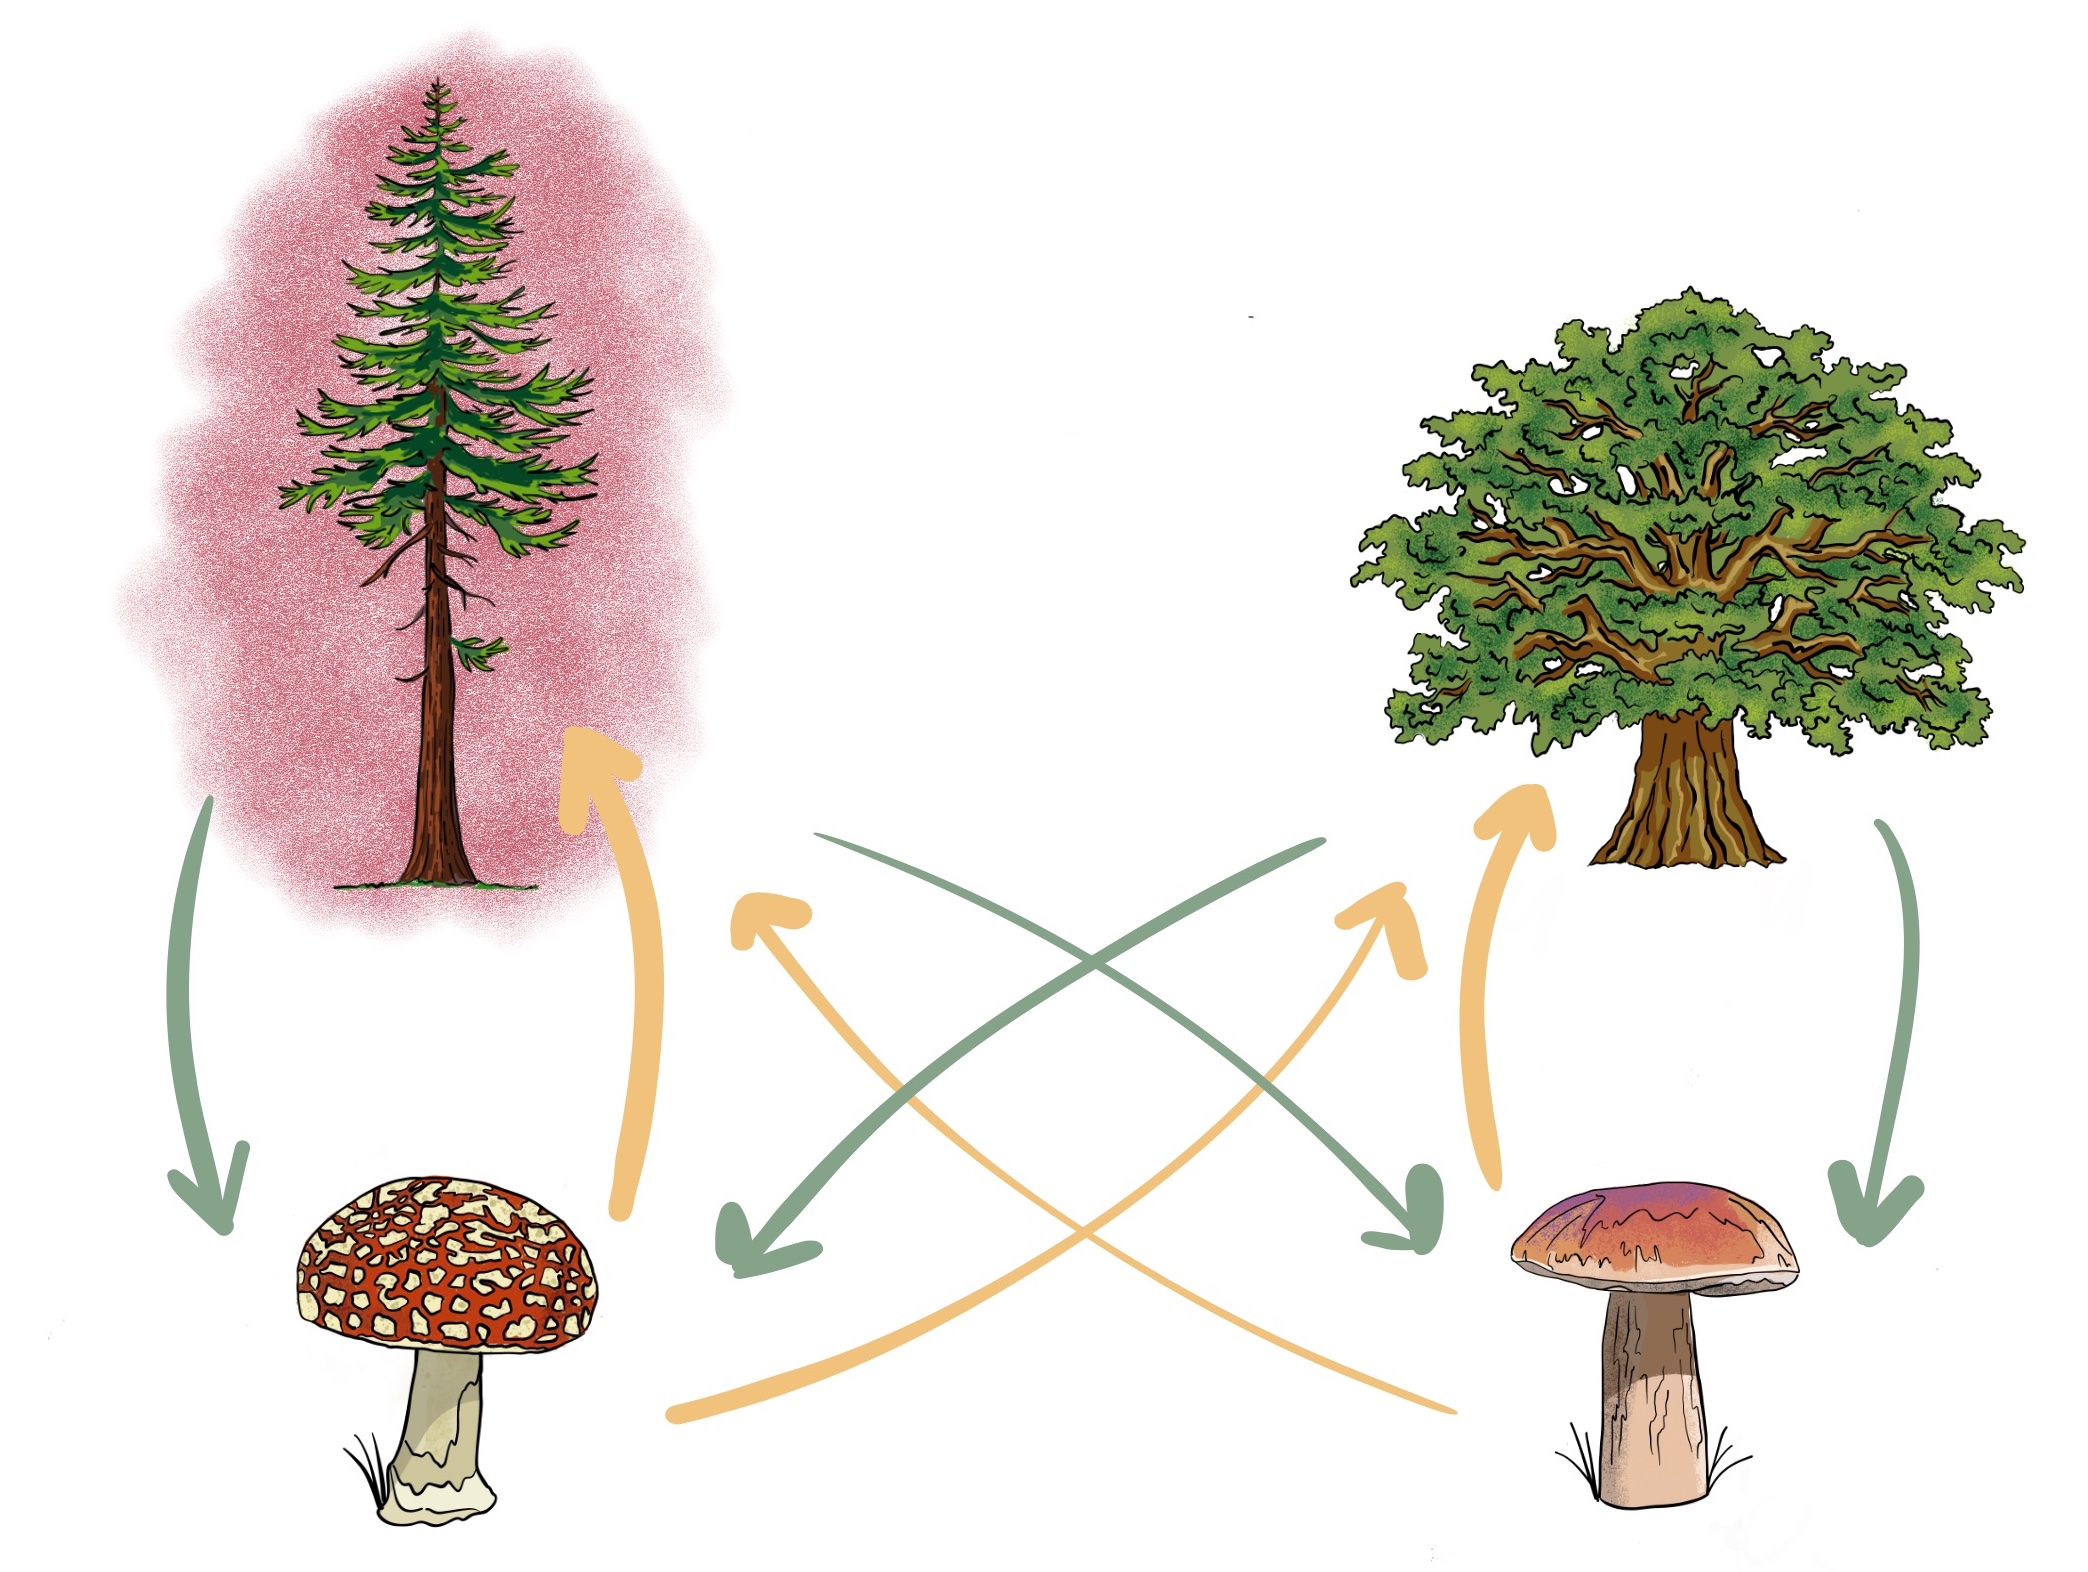 Modeling mycorrhizal networks